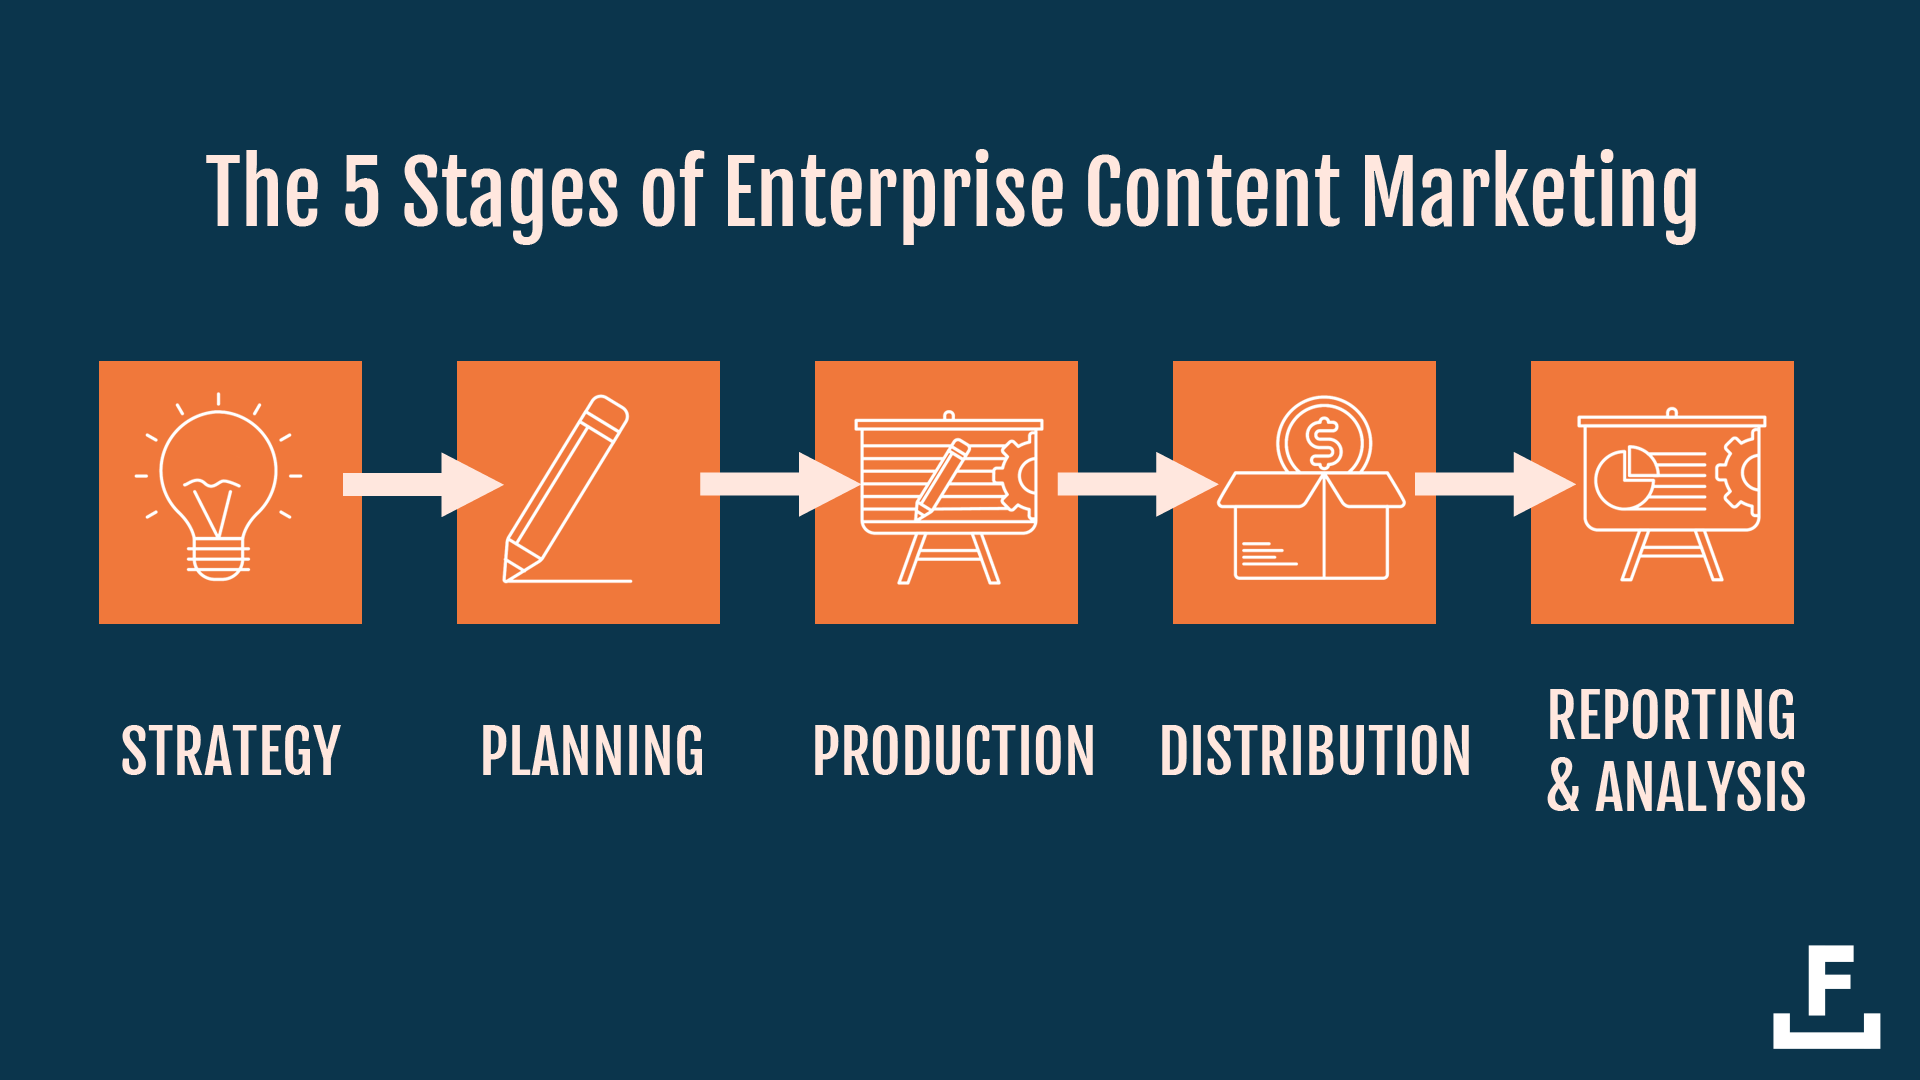 企业层面的内容产品，需要经历5个阶段：策略、规划、制作、分发、分析